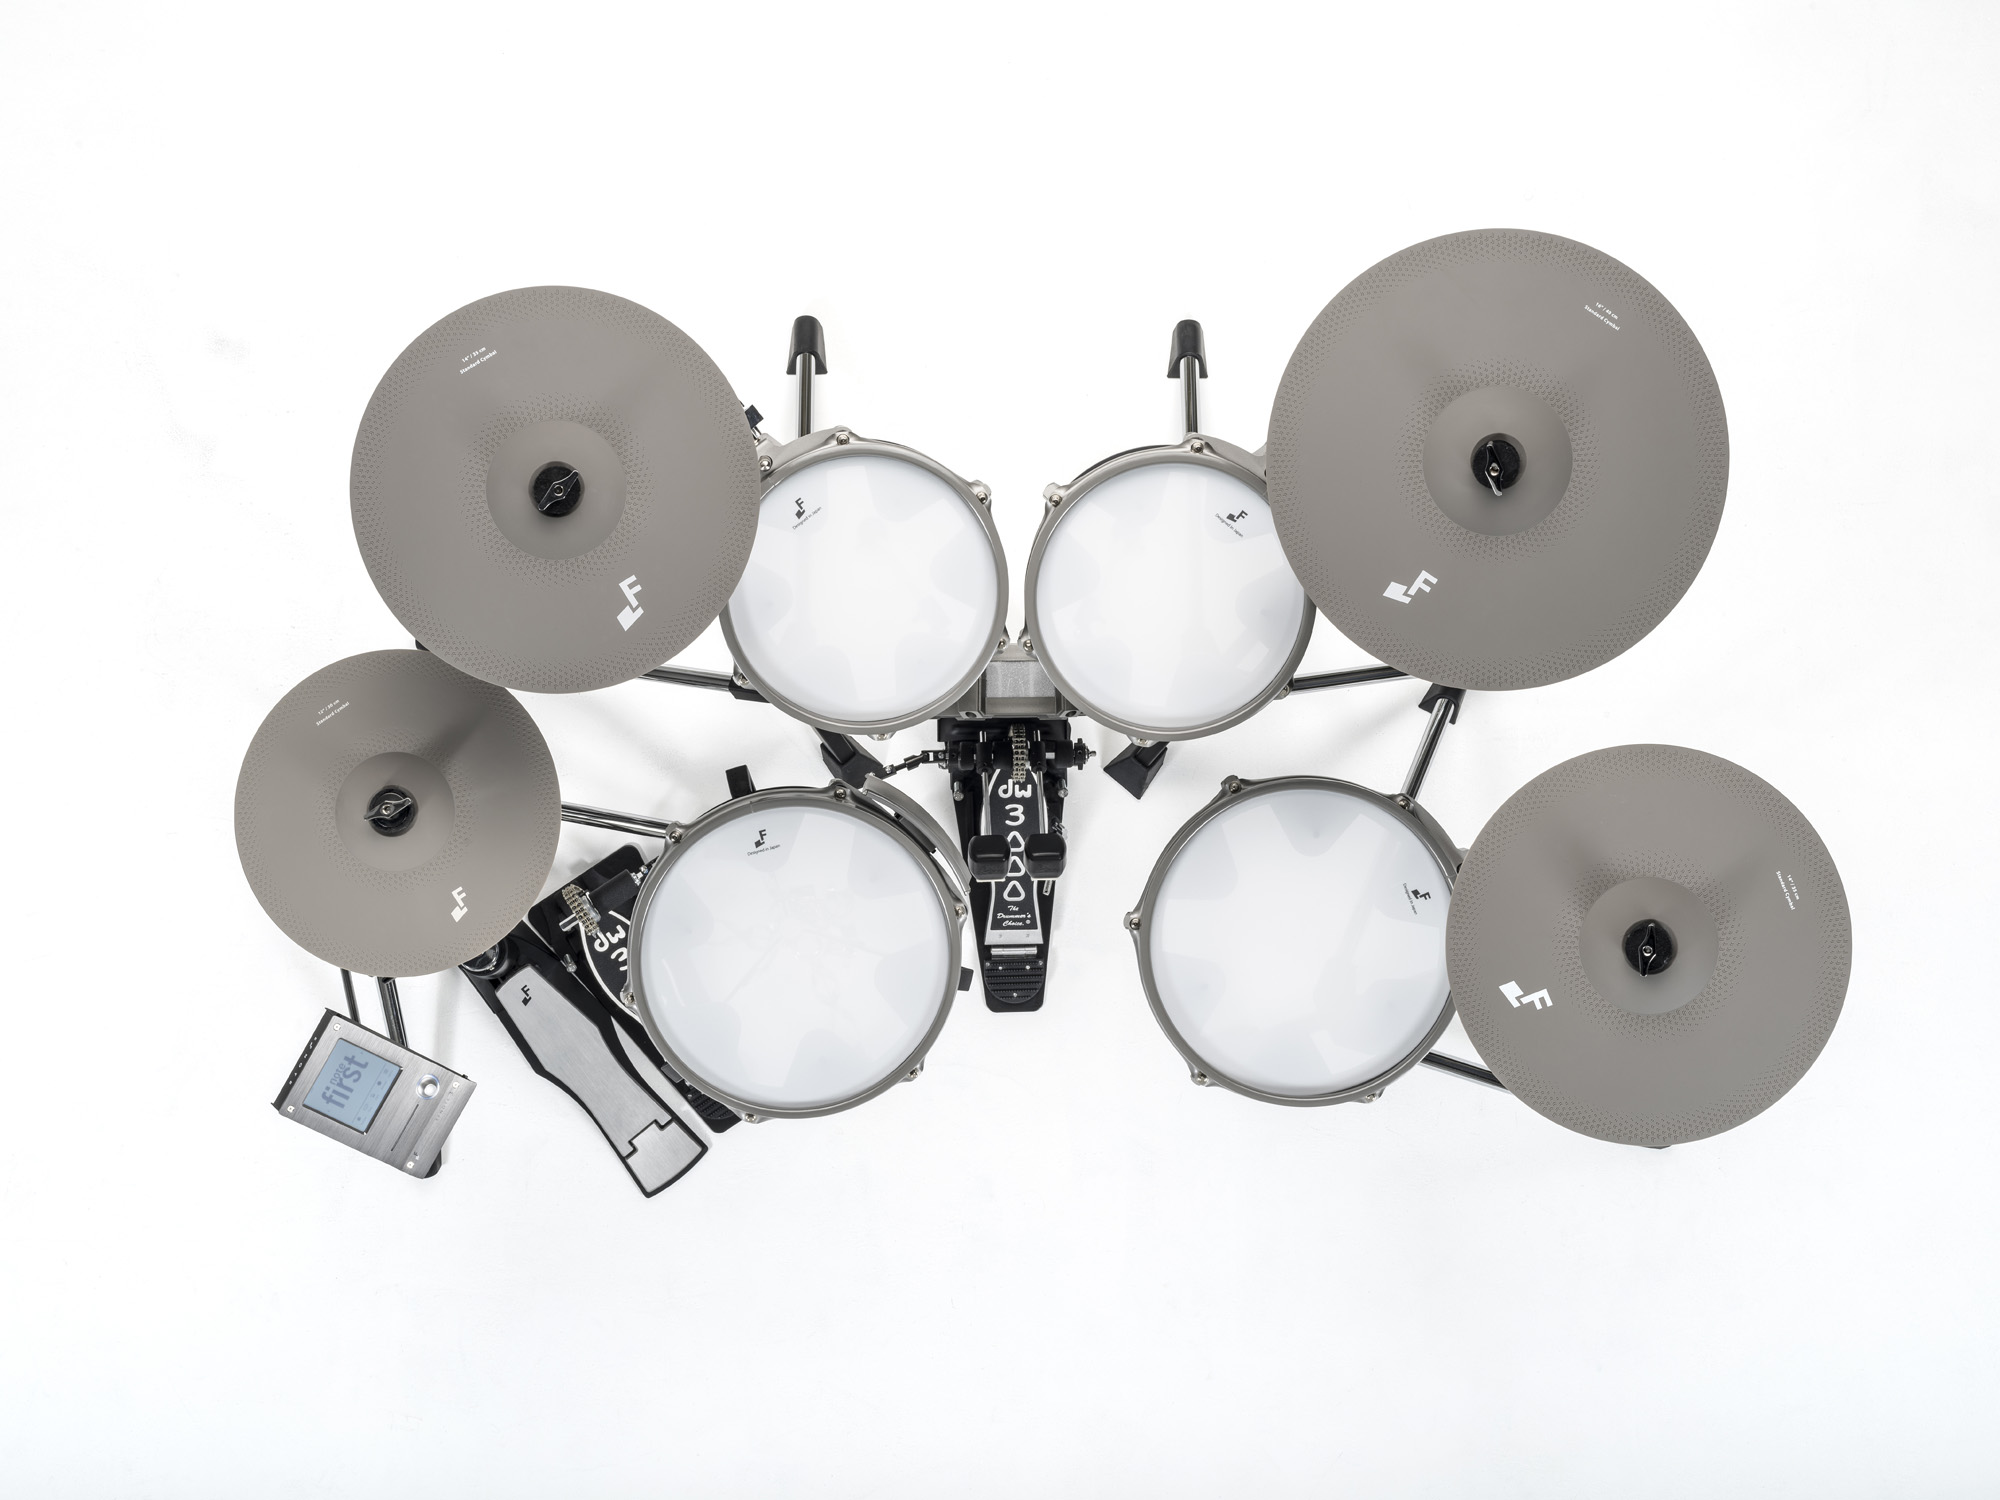 Efnote Efd3 Drum Kit - Electronic drum kit & set - Variation 3